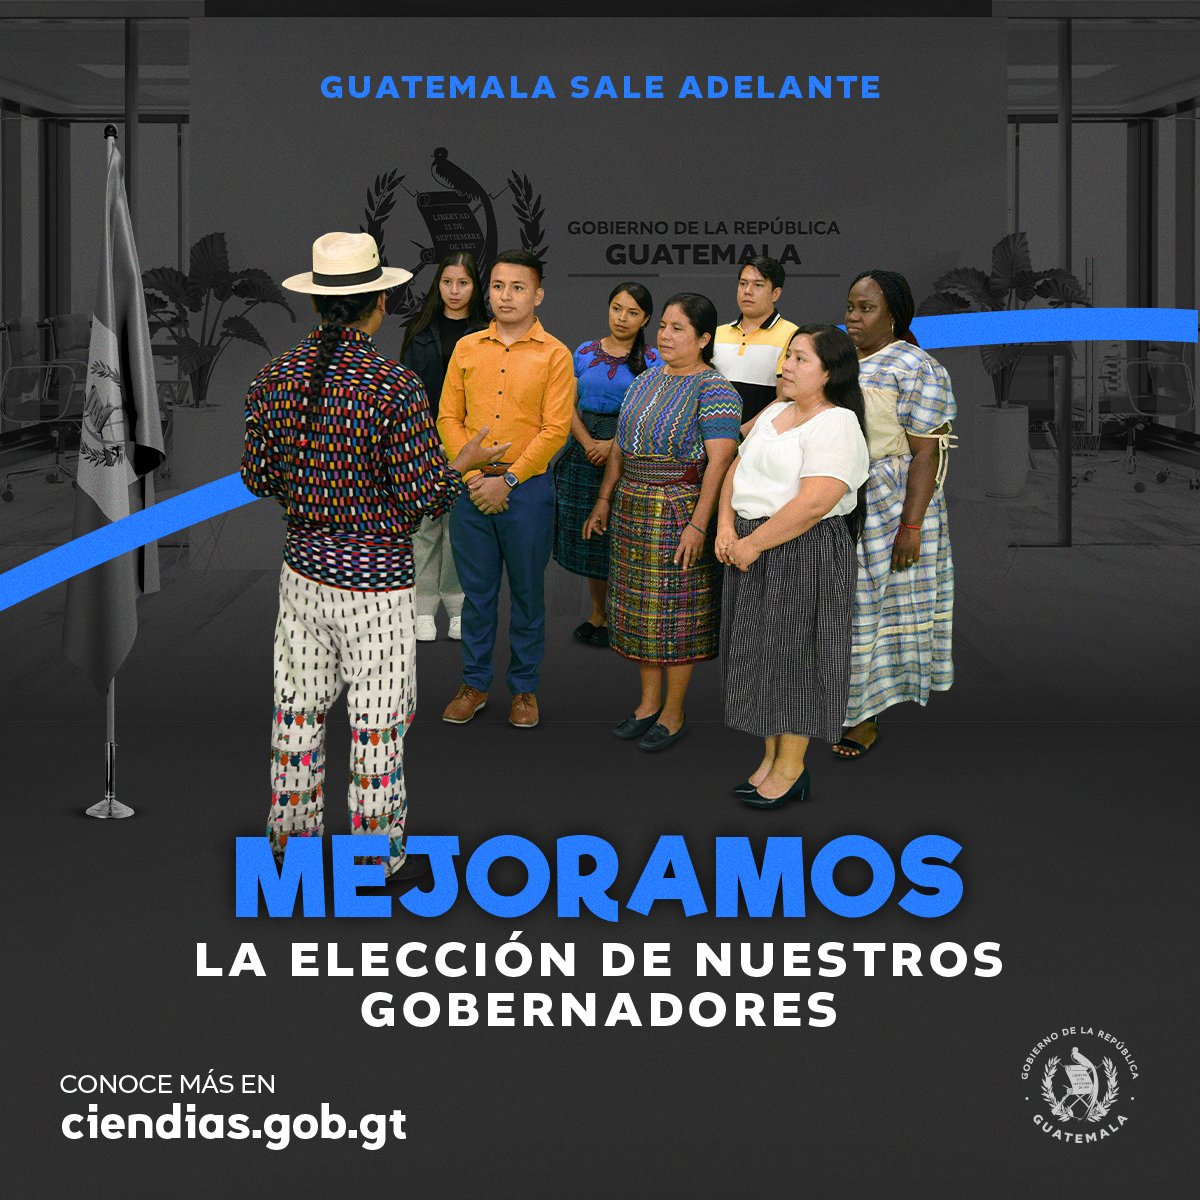 Con funcionarios idóneos, comprometidos y capaces aseguramos el desarrollo de las comunidades. #GuatemalaSaleAdelante